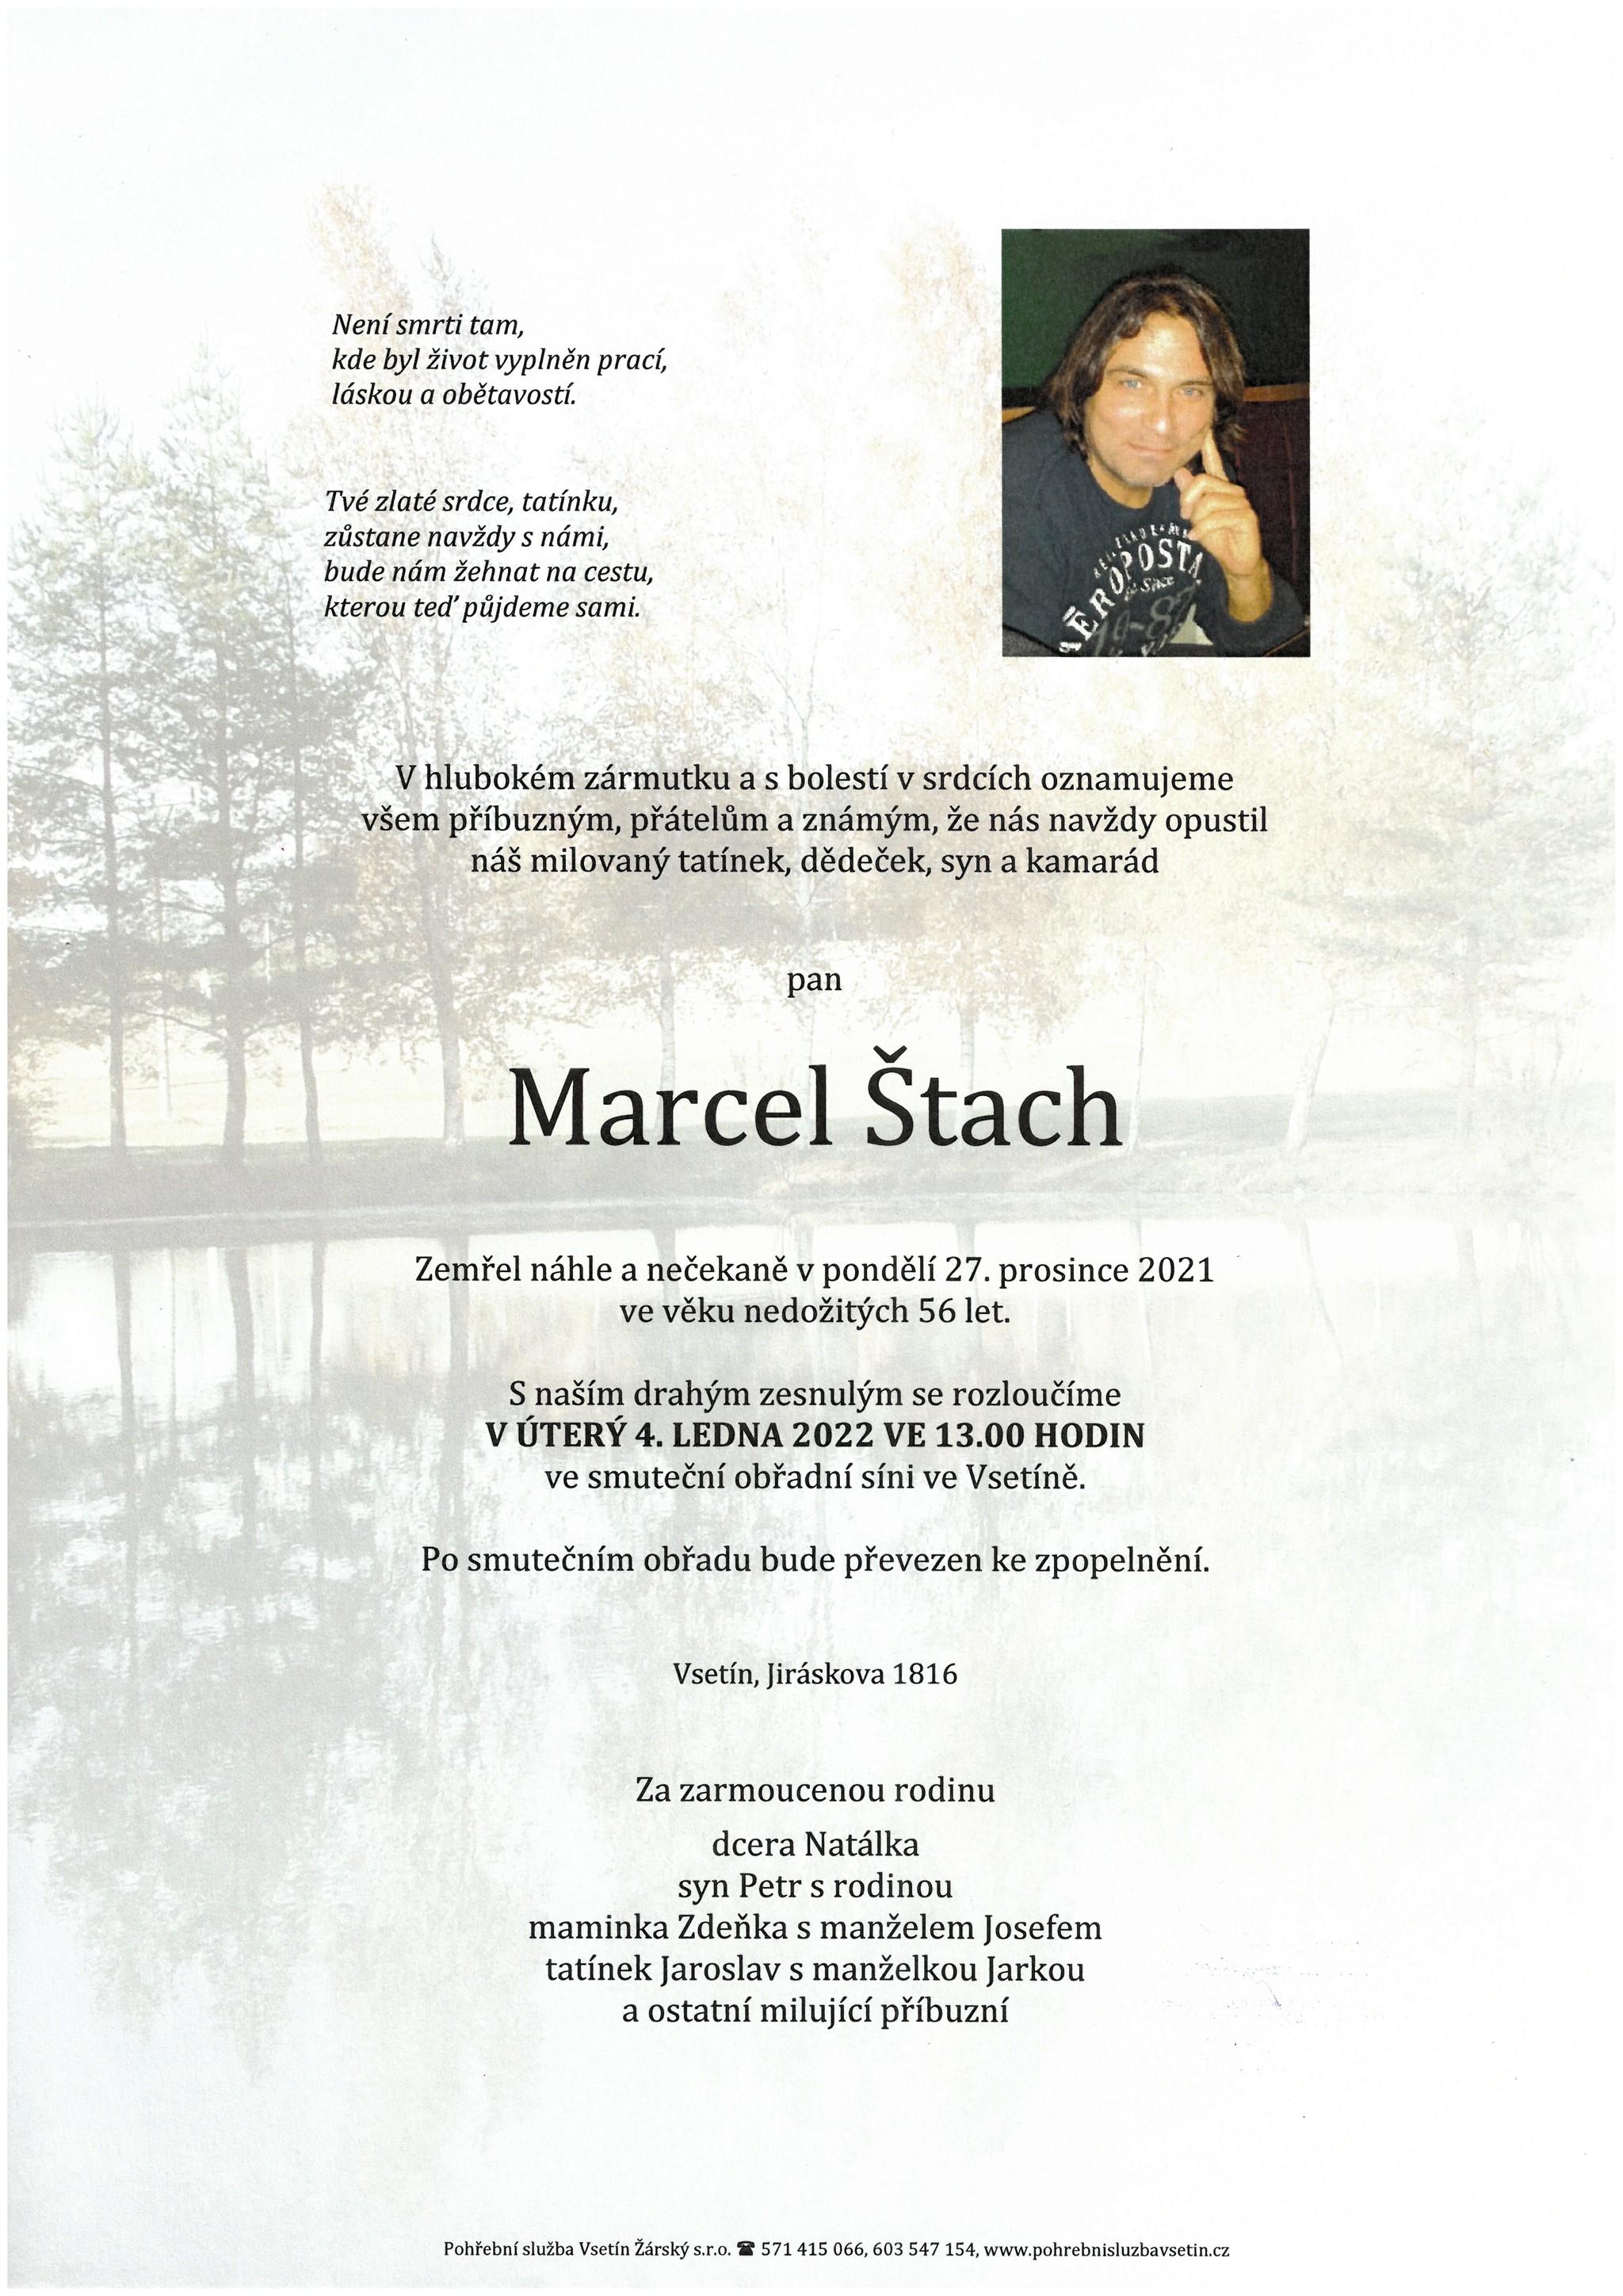 Marcel Štach